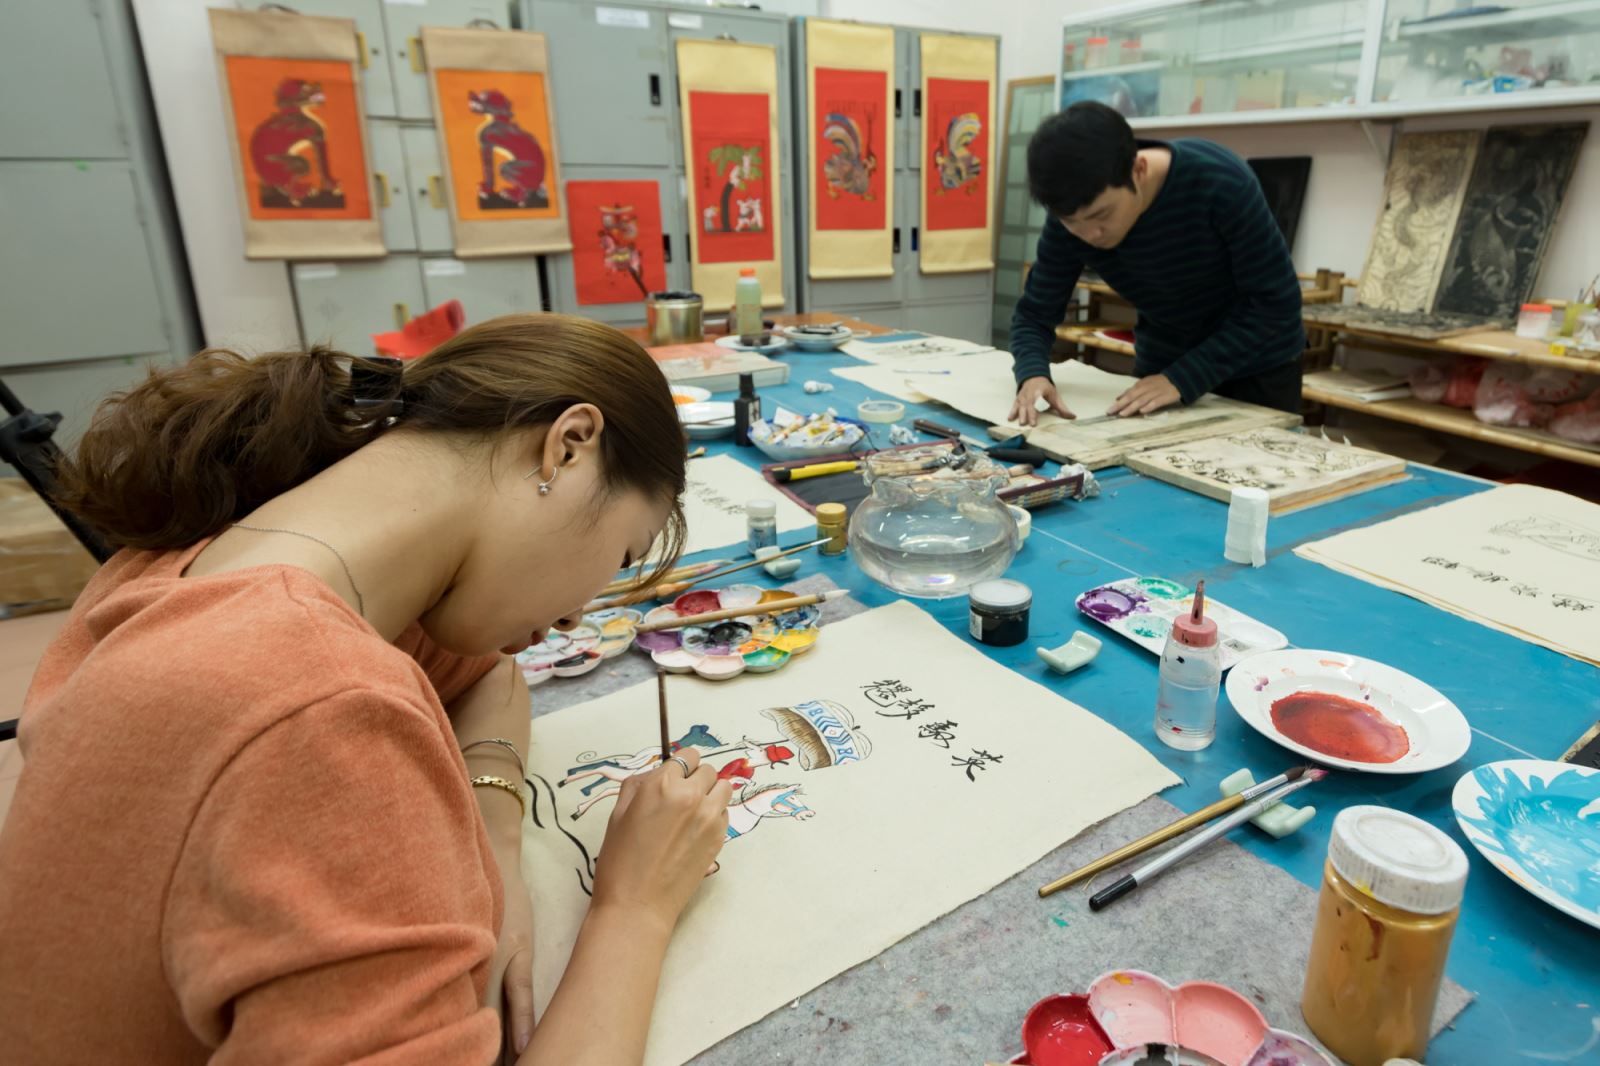 Các họa sỹ trẻ đang thực hiện phóng tác tranh dân gian Kim Hoàng “Đám cưới Chuột” dịp Tết Nguyên đán 2020